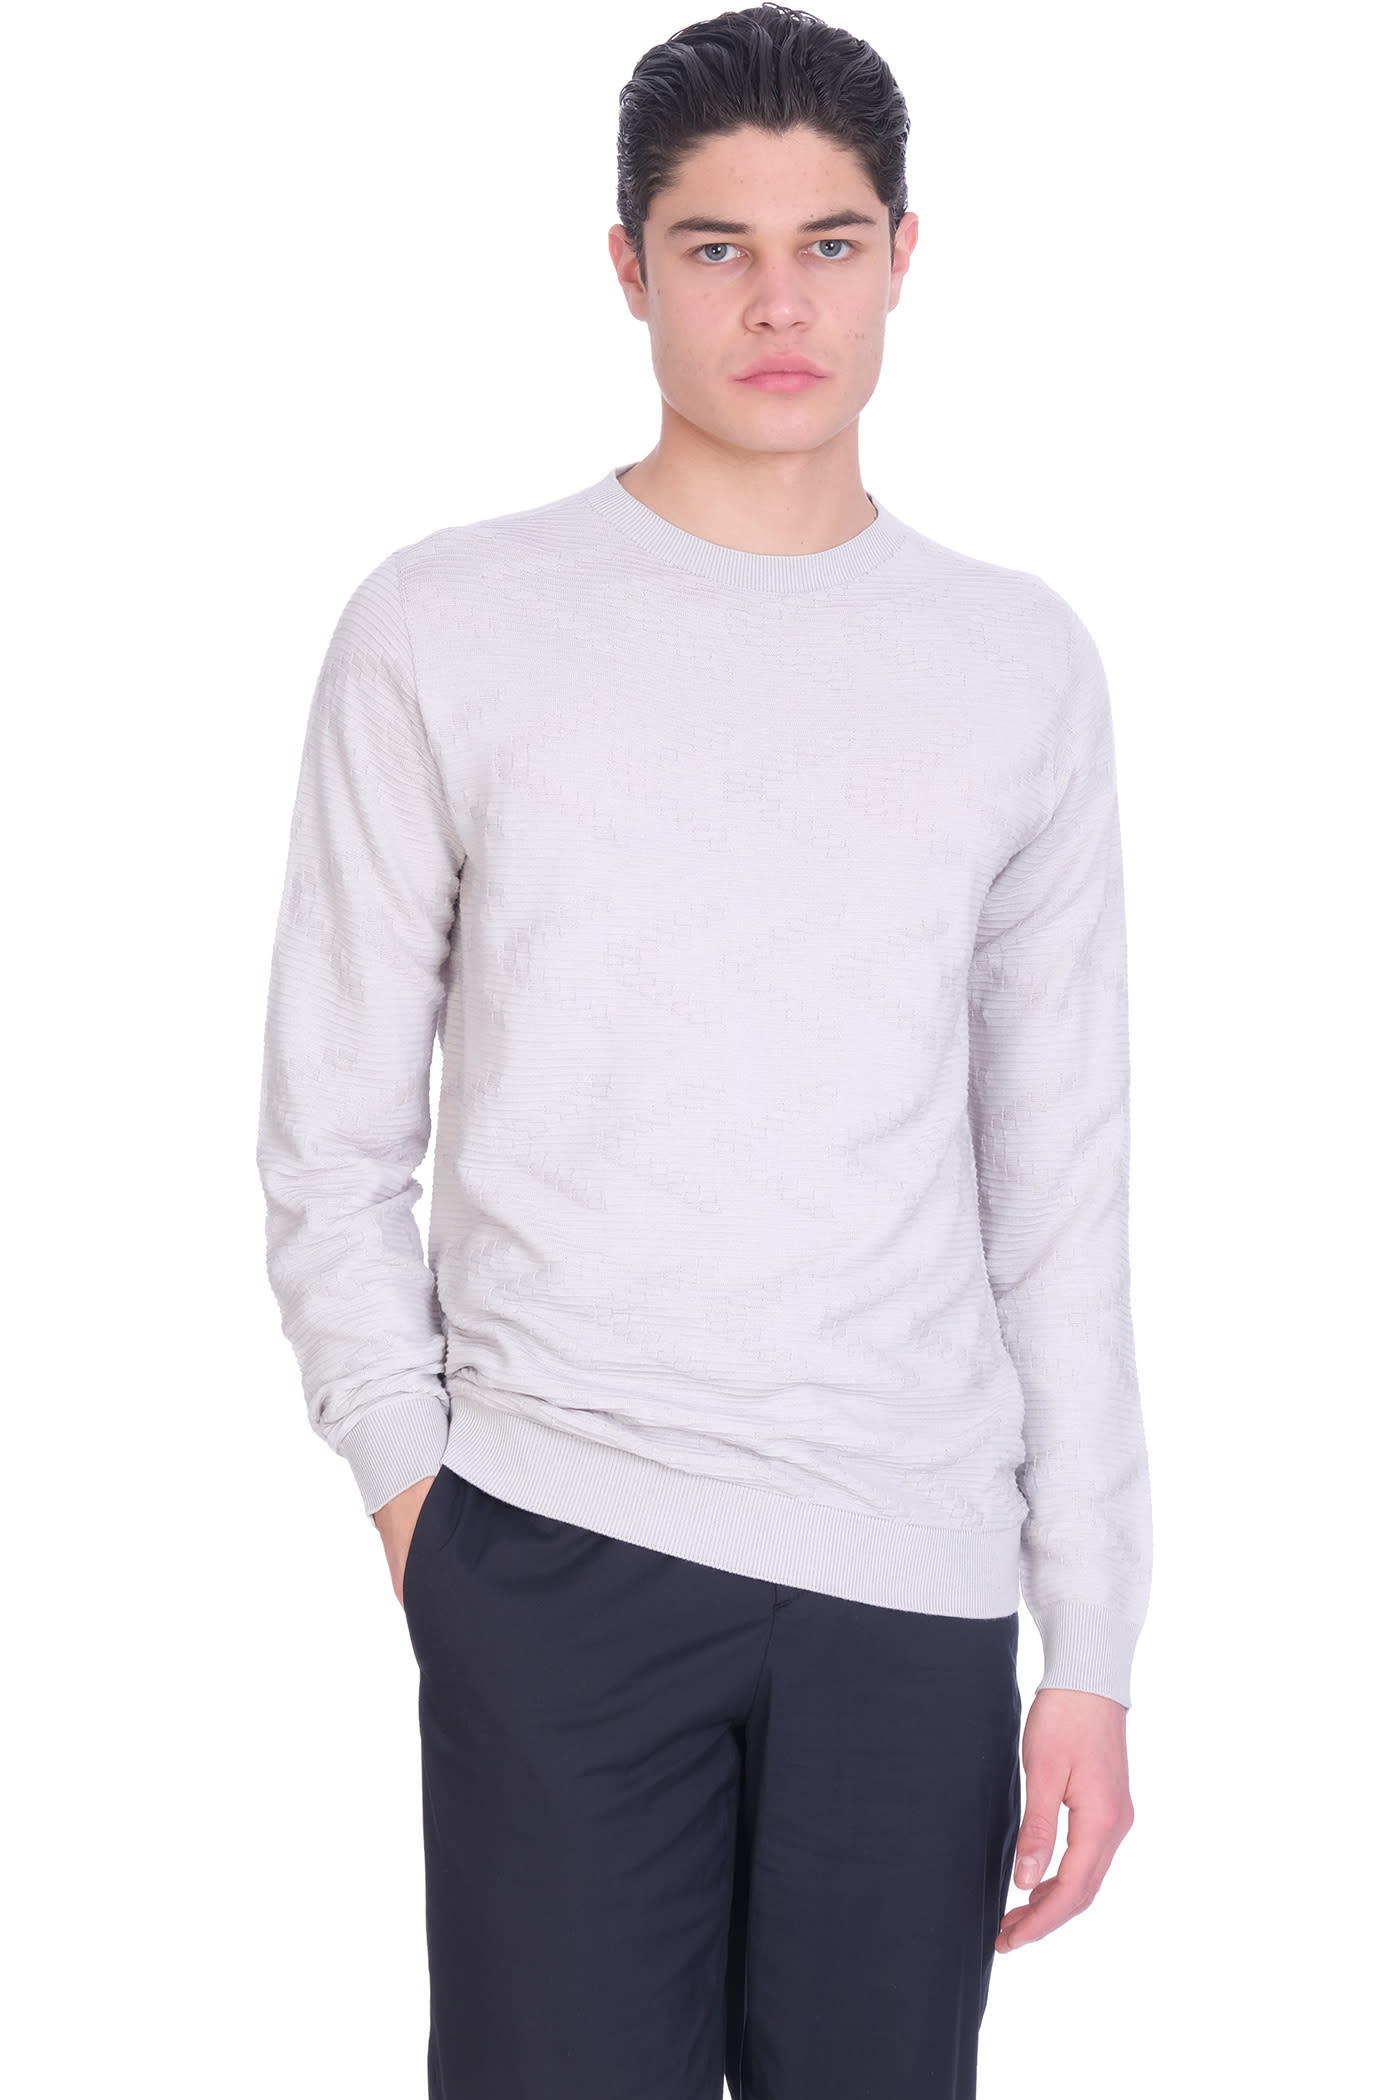 Giorgio Armani Knitwear In Grey Cotton